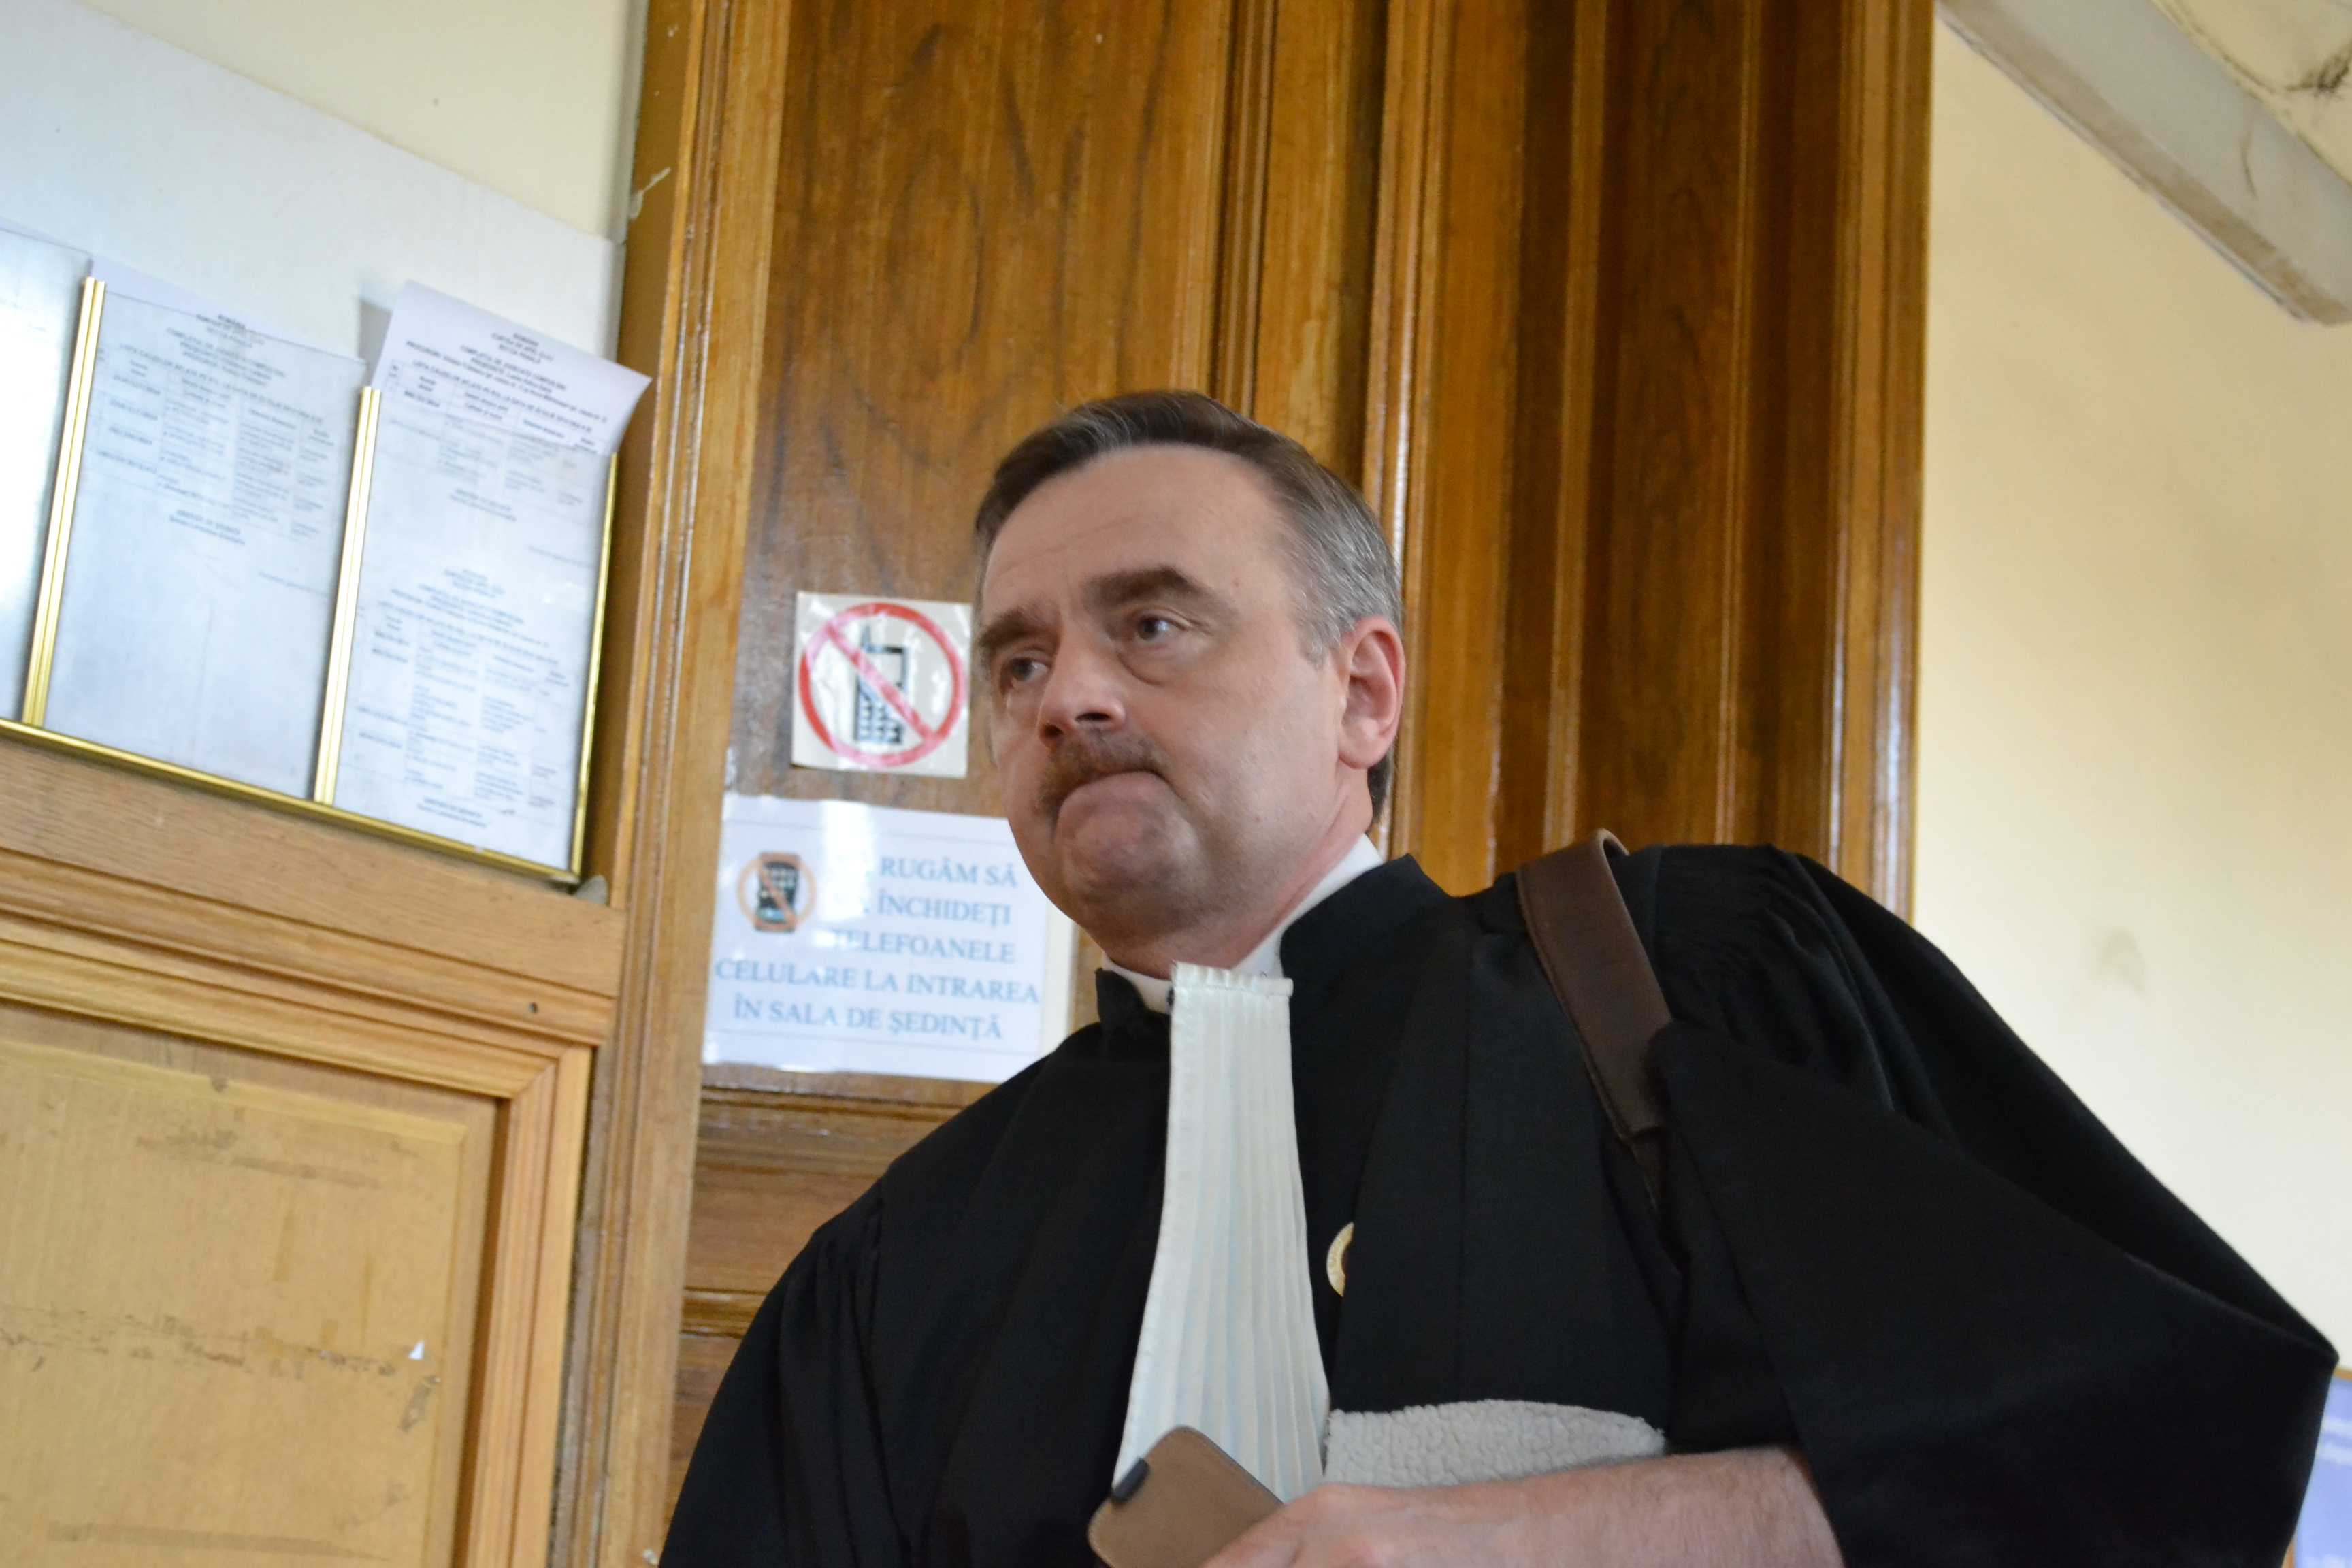 Procurorul Alexandru Lele profeseaza acum ca avocat